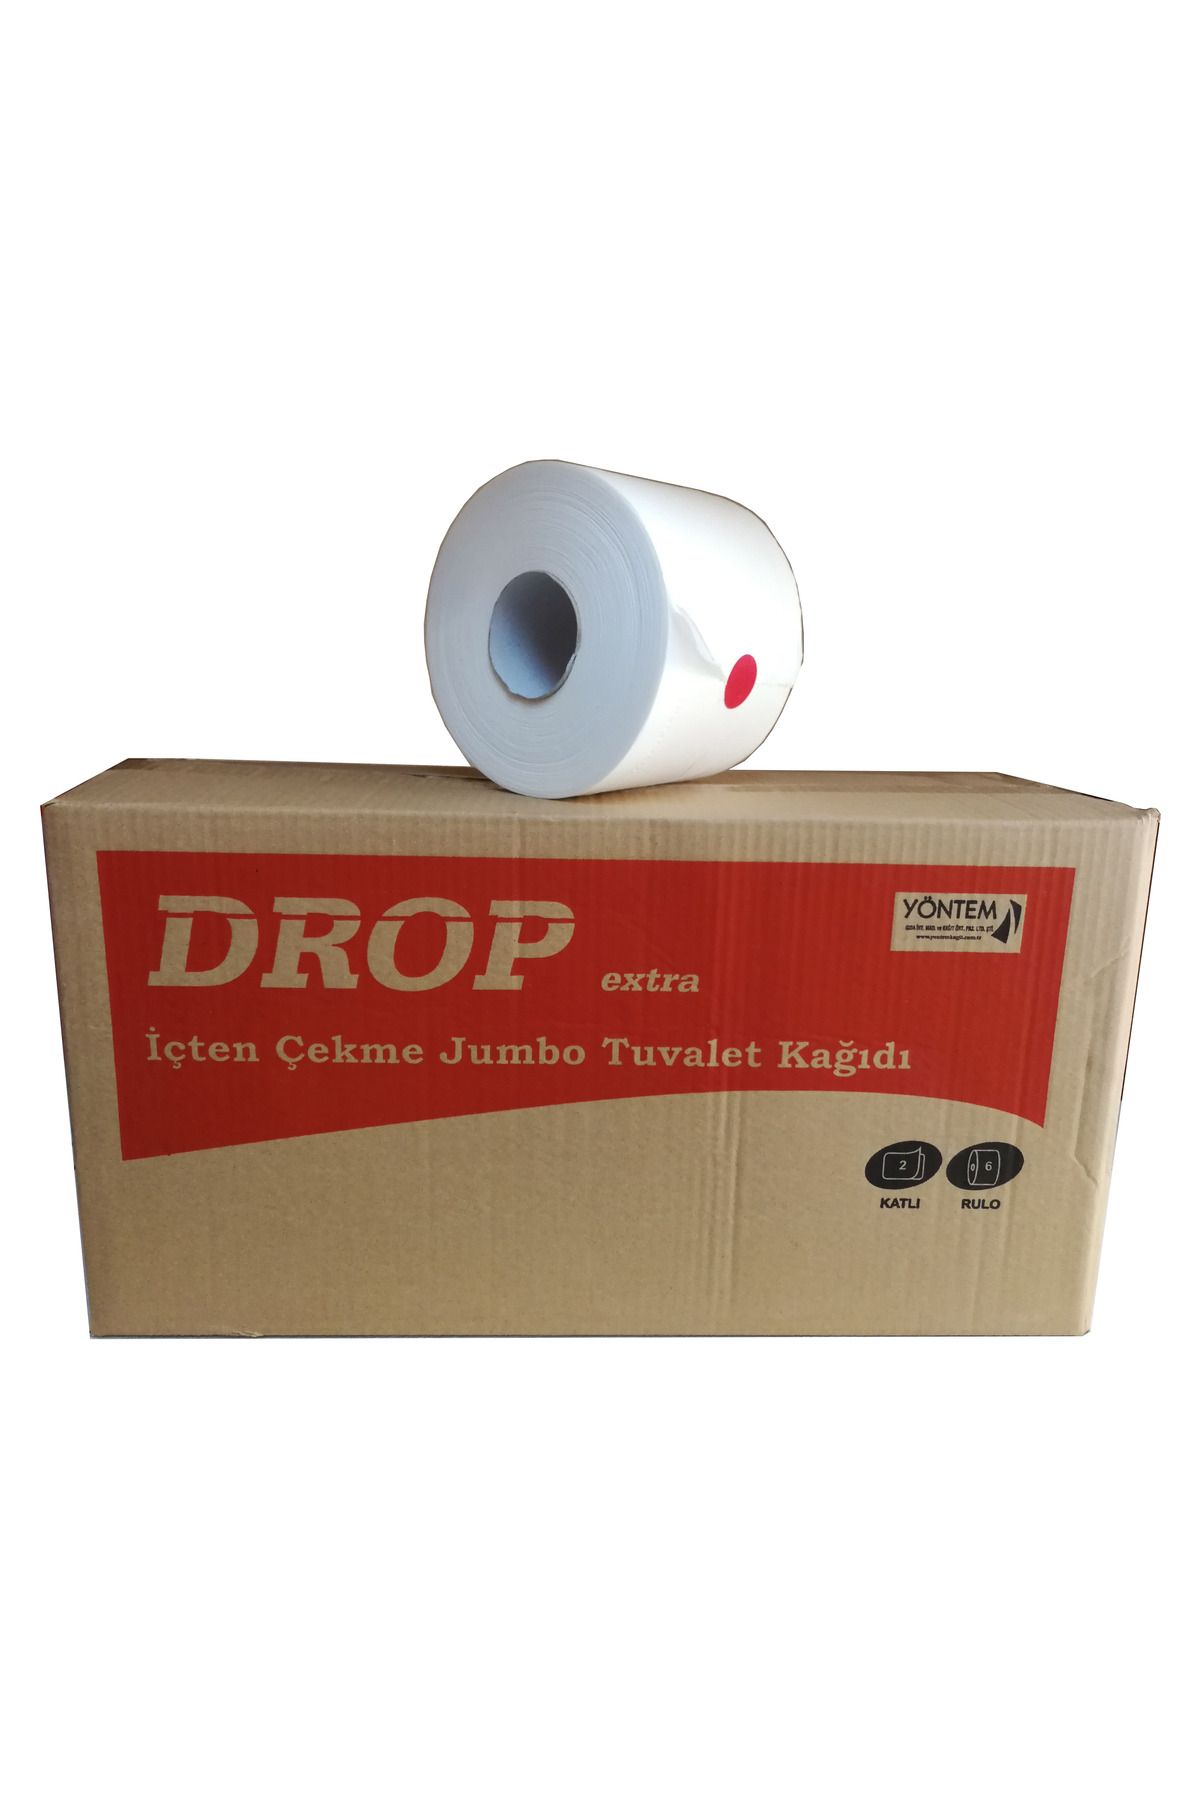 drop Içten Çekme Cimri Jumbo Tuvalet Kağıdı - 4 Kg - 2 Kat - Koli